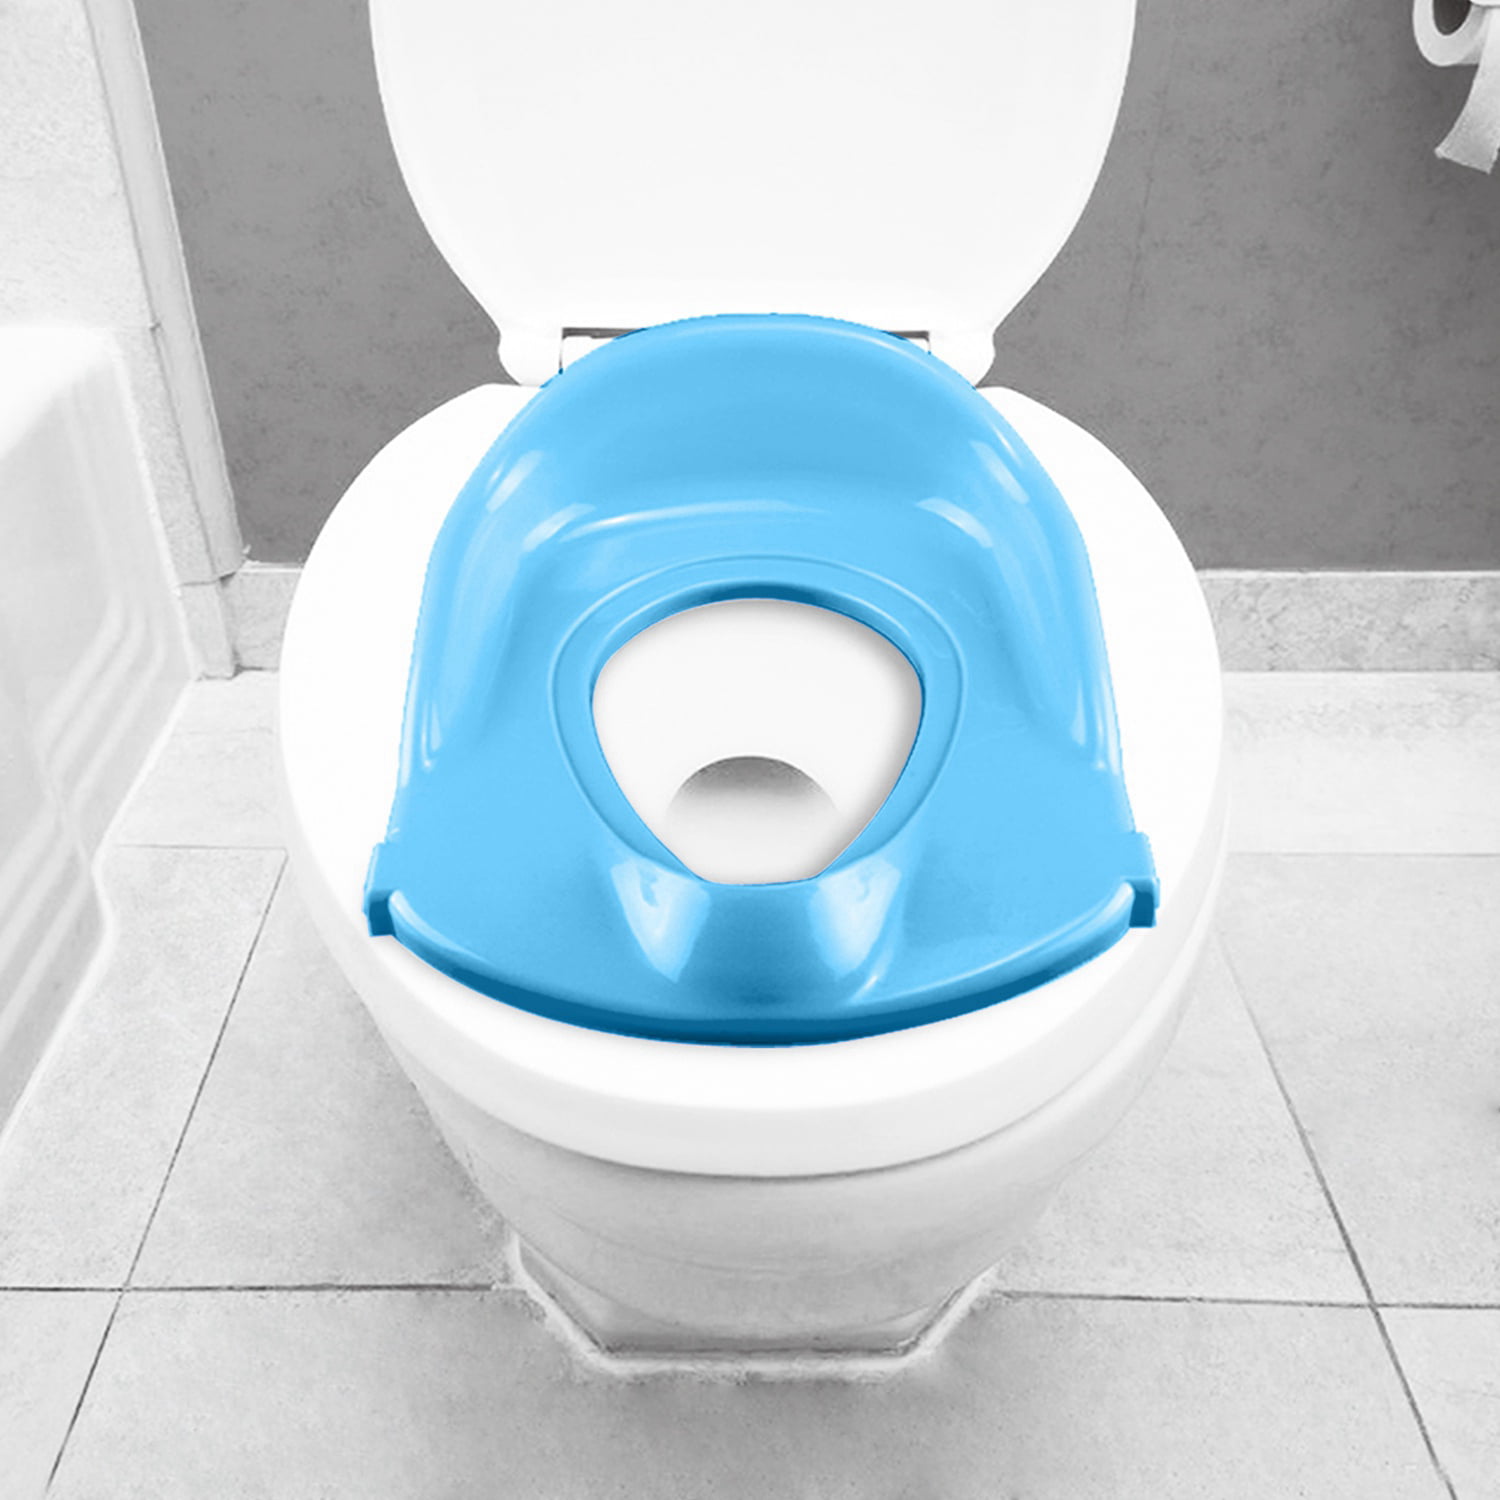 toilet seat for baby boy Potty orinal walmart i19 azul gaskets